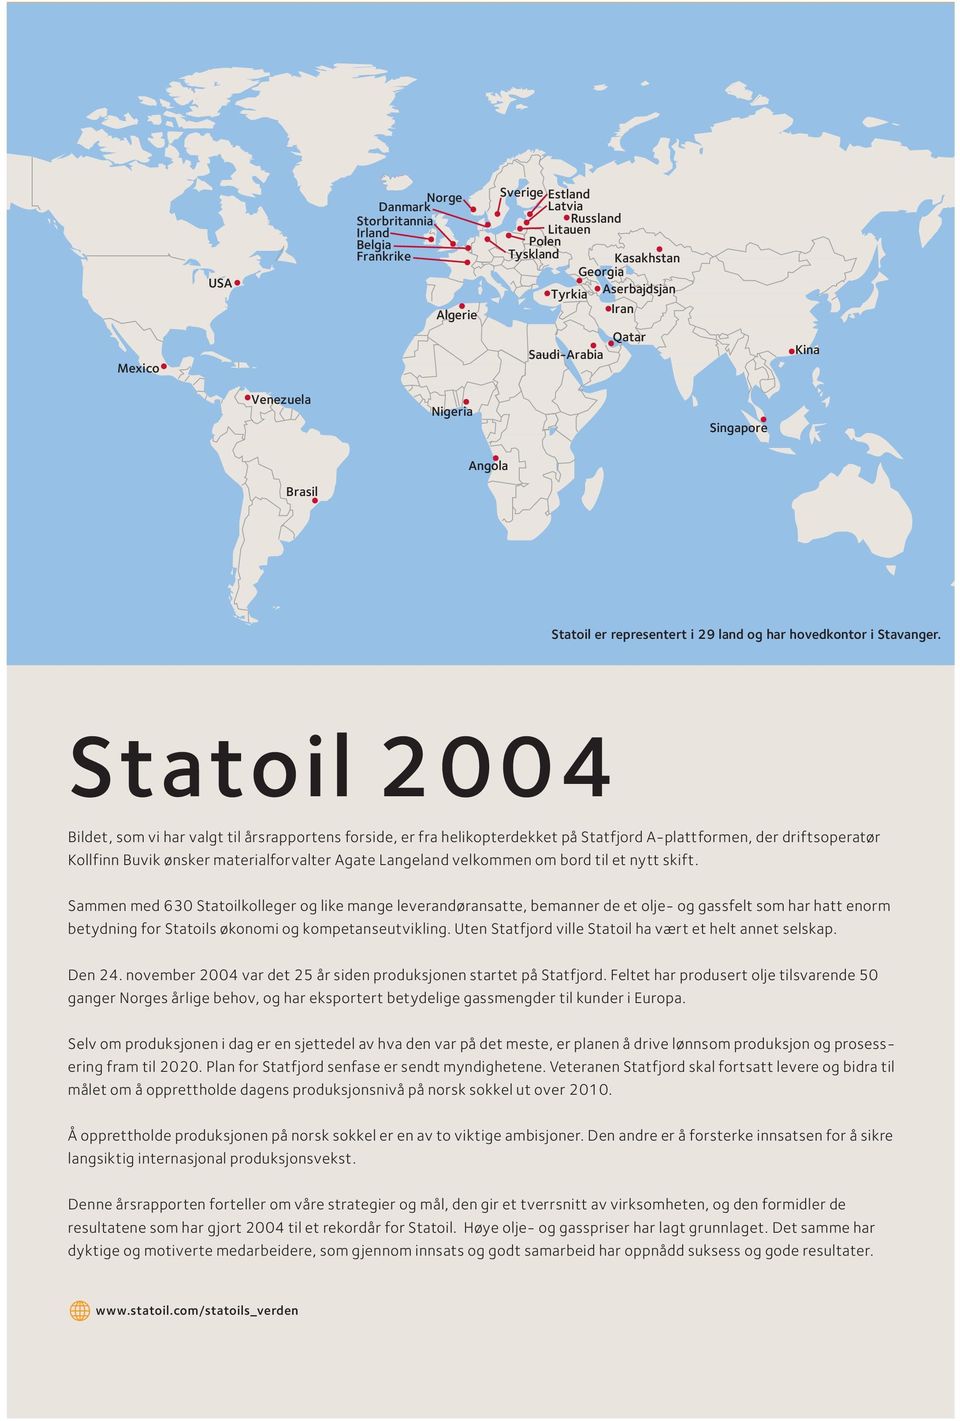 Statoil 2004 Bildet, som vi har valgt til årsrapportens forside, er fra helikopterdekket på Statfjord A-plattformen, der driftsoperatør Kollfinn Buvik ønsker materialforvalter Agate Langeland